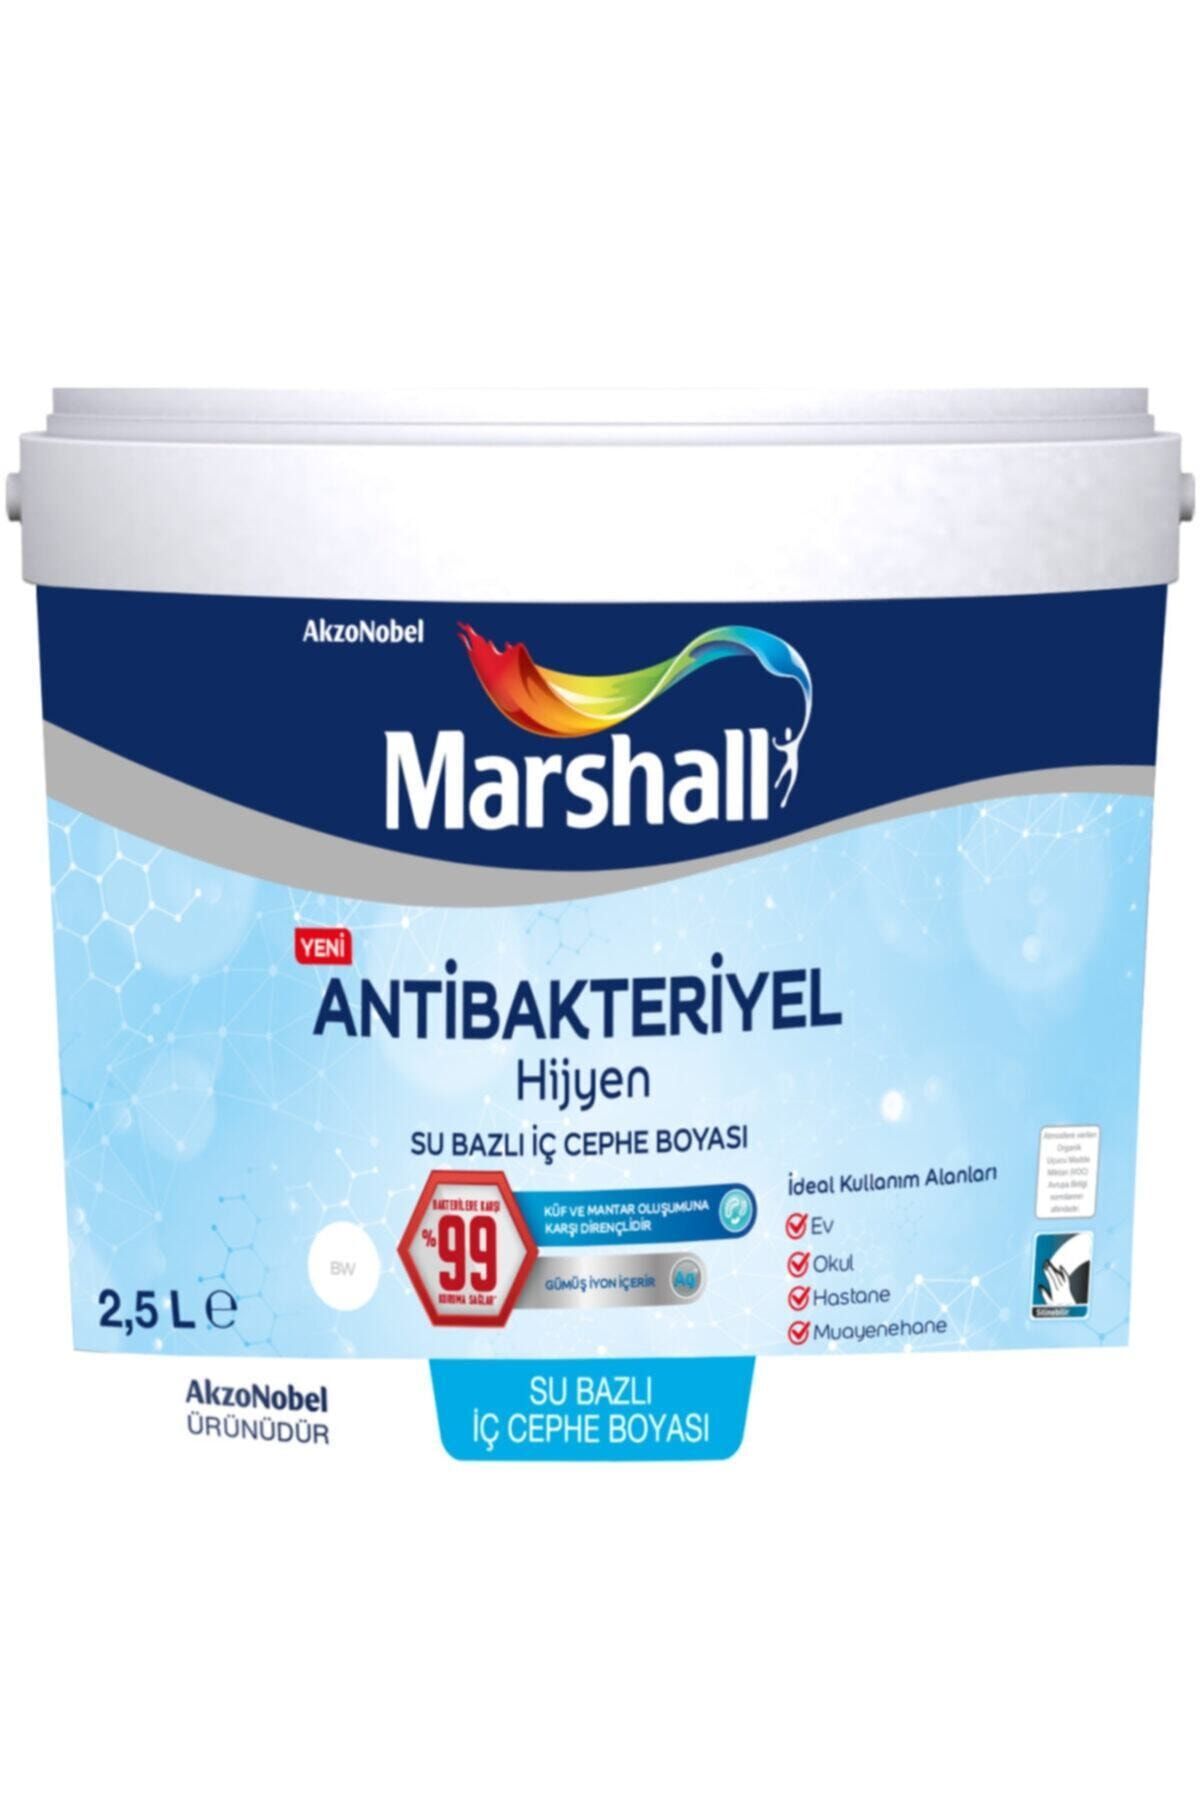 Marshall Antibakteriyel Hijyen Iç Cephe Duvar Boyası 2,5 Lt Akarsu